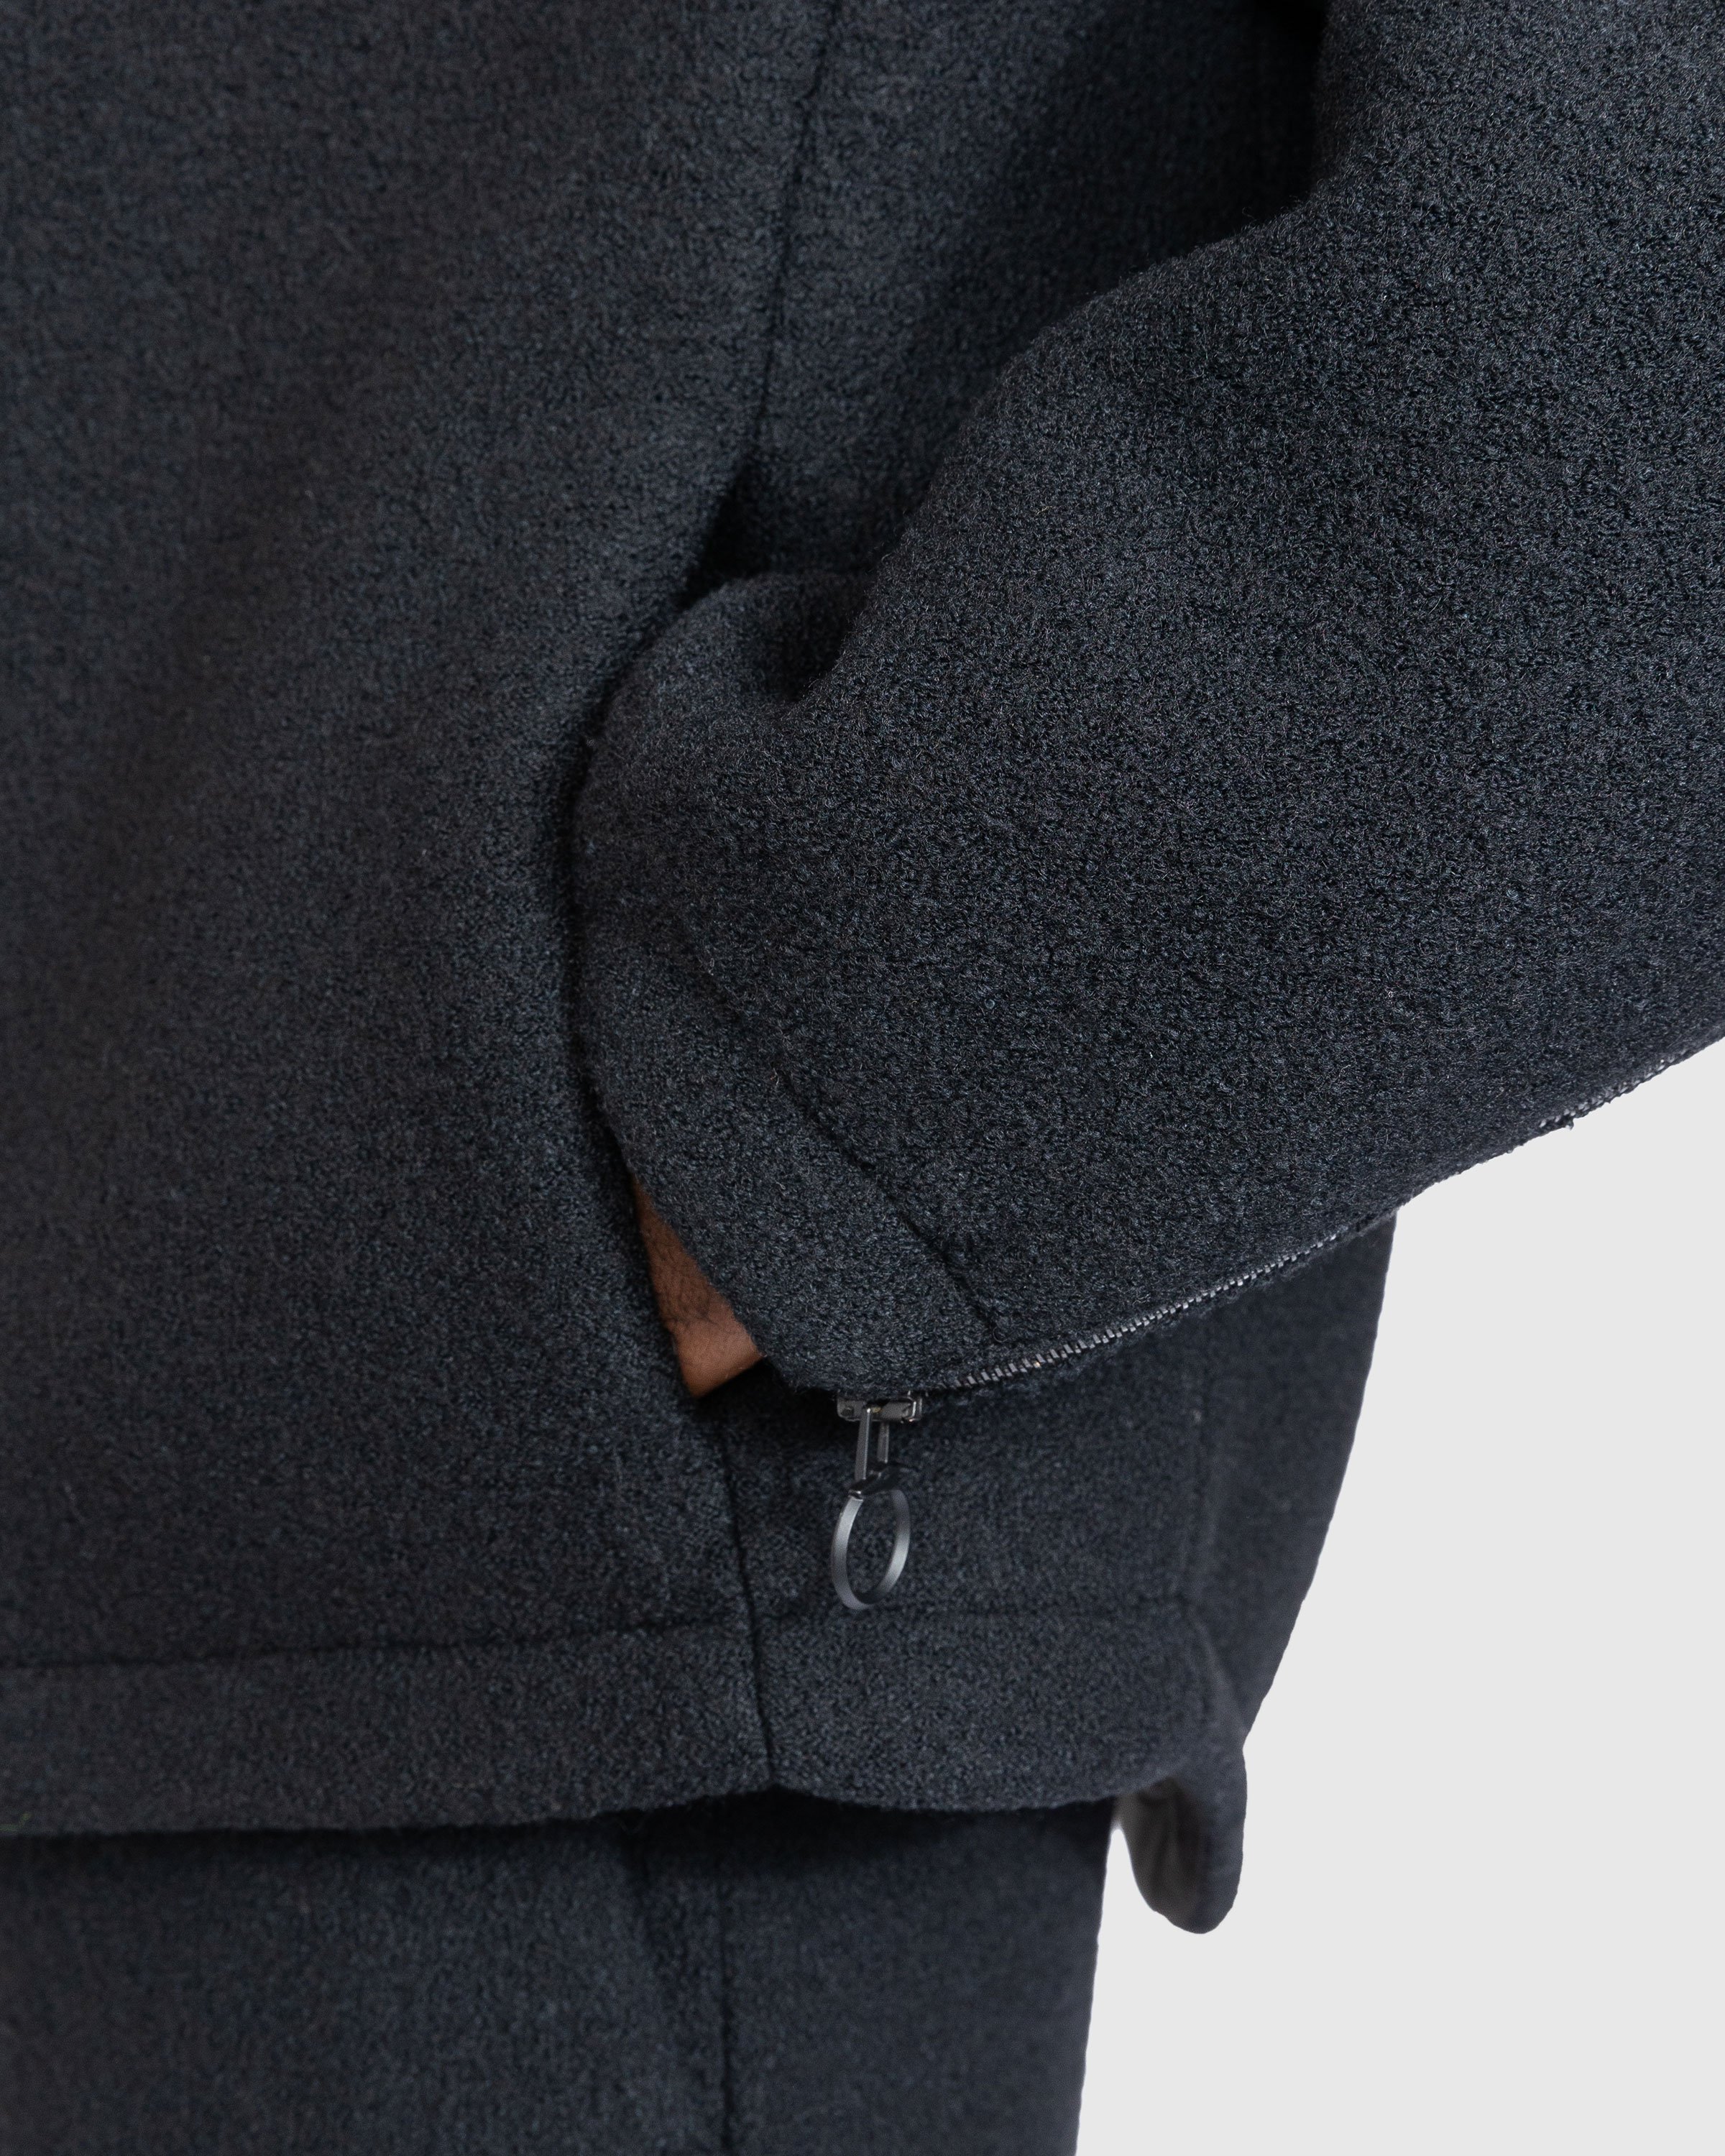 Trussardi - Boucle Jersey Scuba Jacket Black - Clothing - Black - Image 6